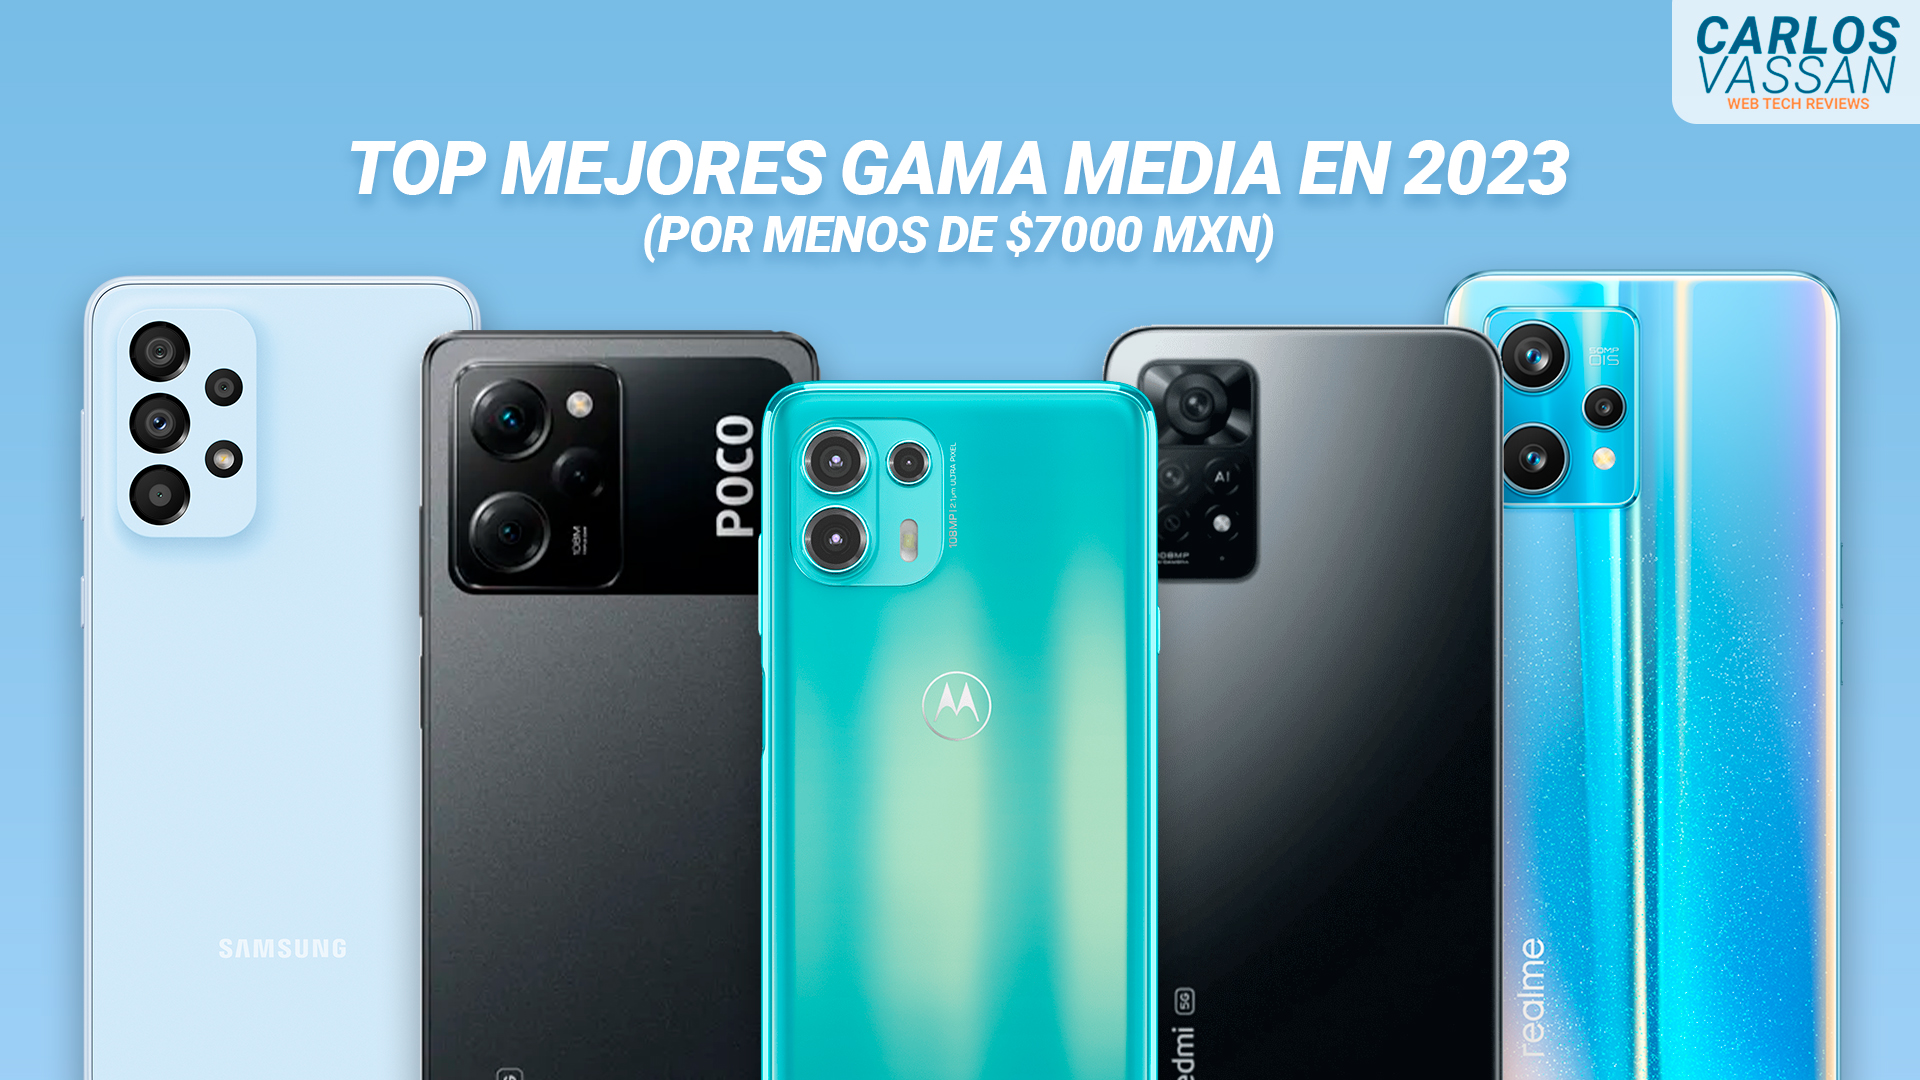 Top mejores teléfonos de gama media para marzo 2023 por menos de $7000 MXN